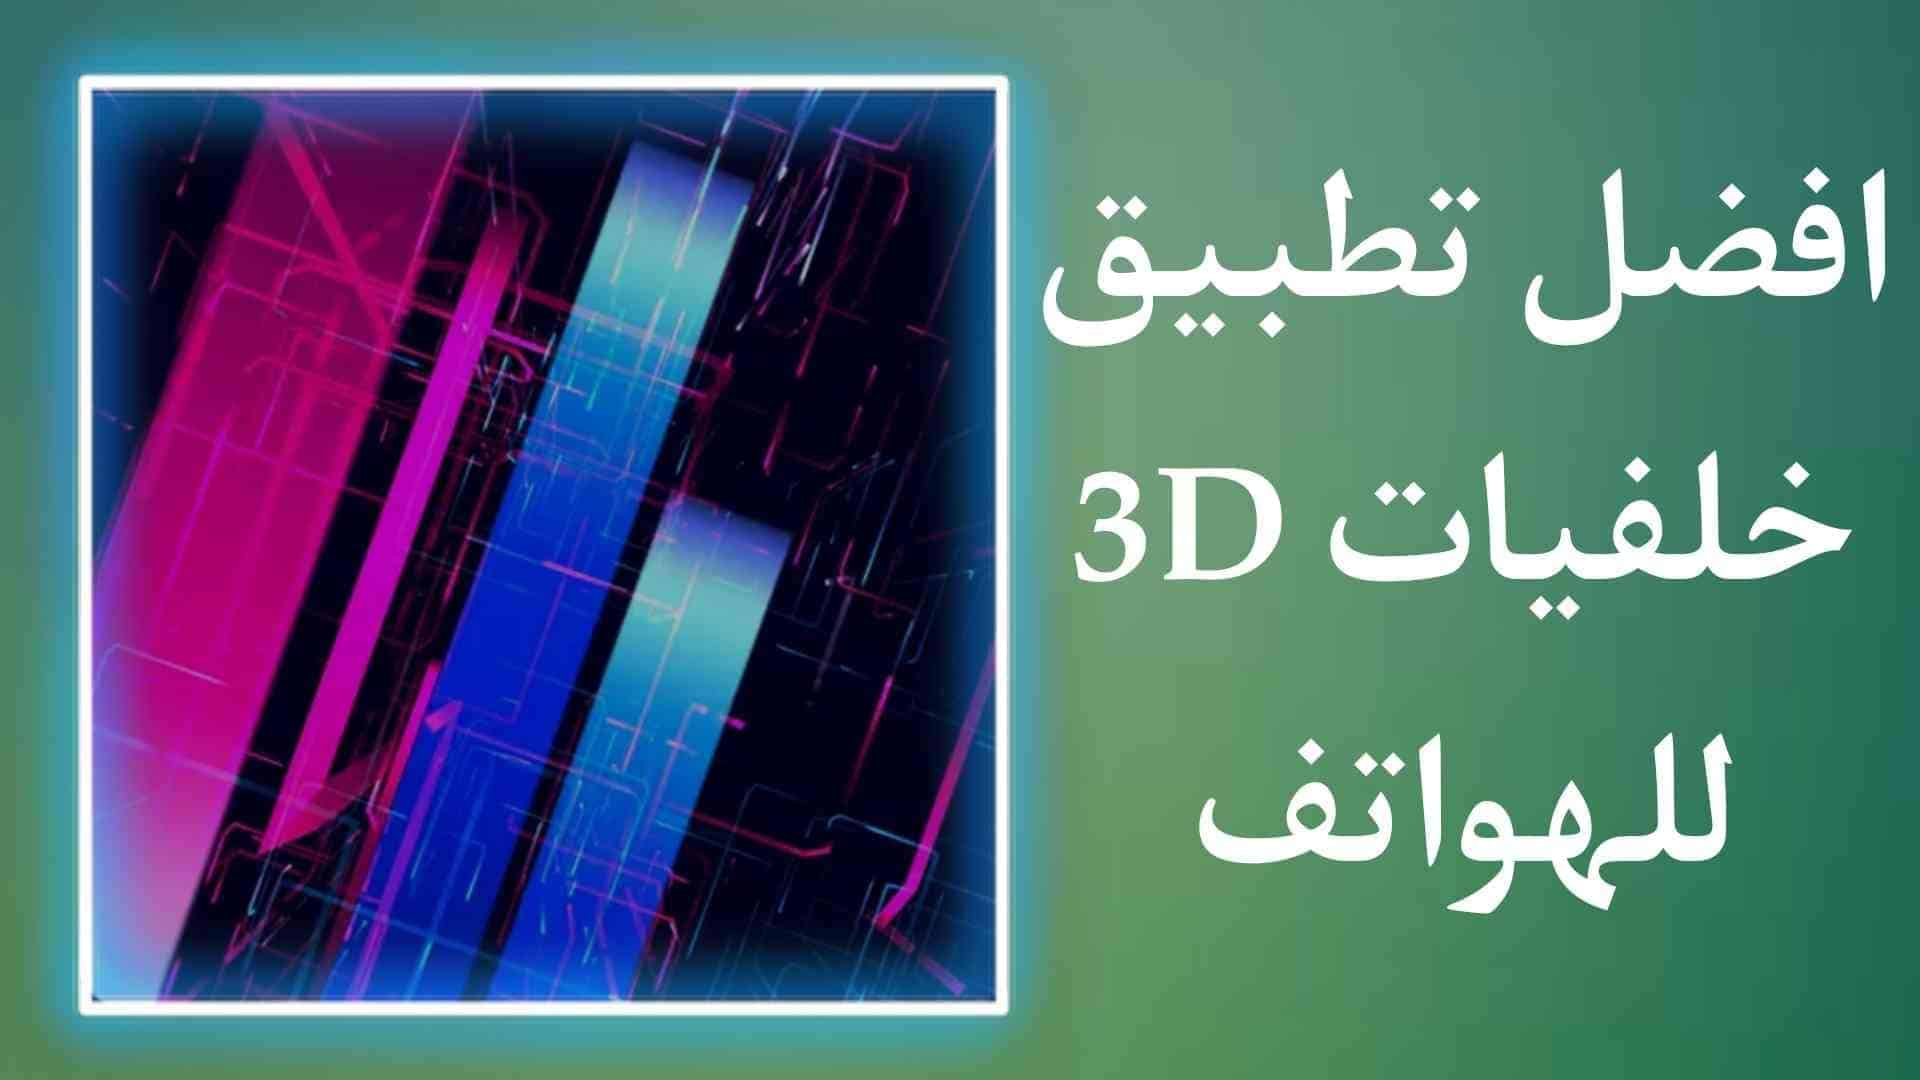 تطبيق خلفيات 3D بجودة عالية خرافية للهواتف